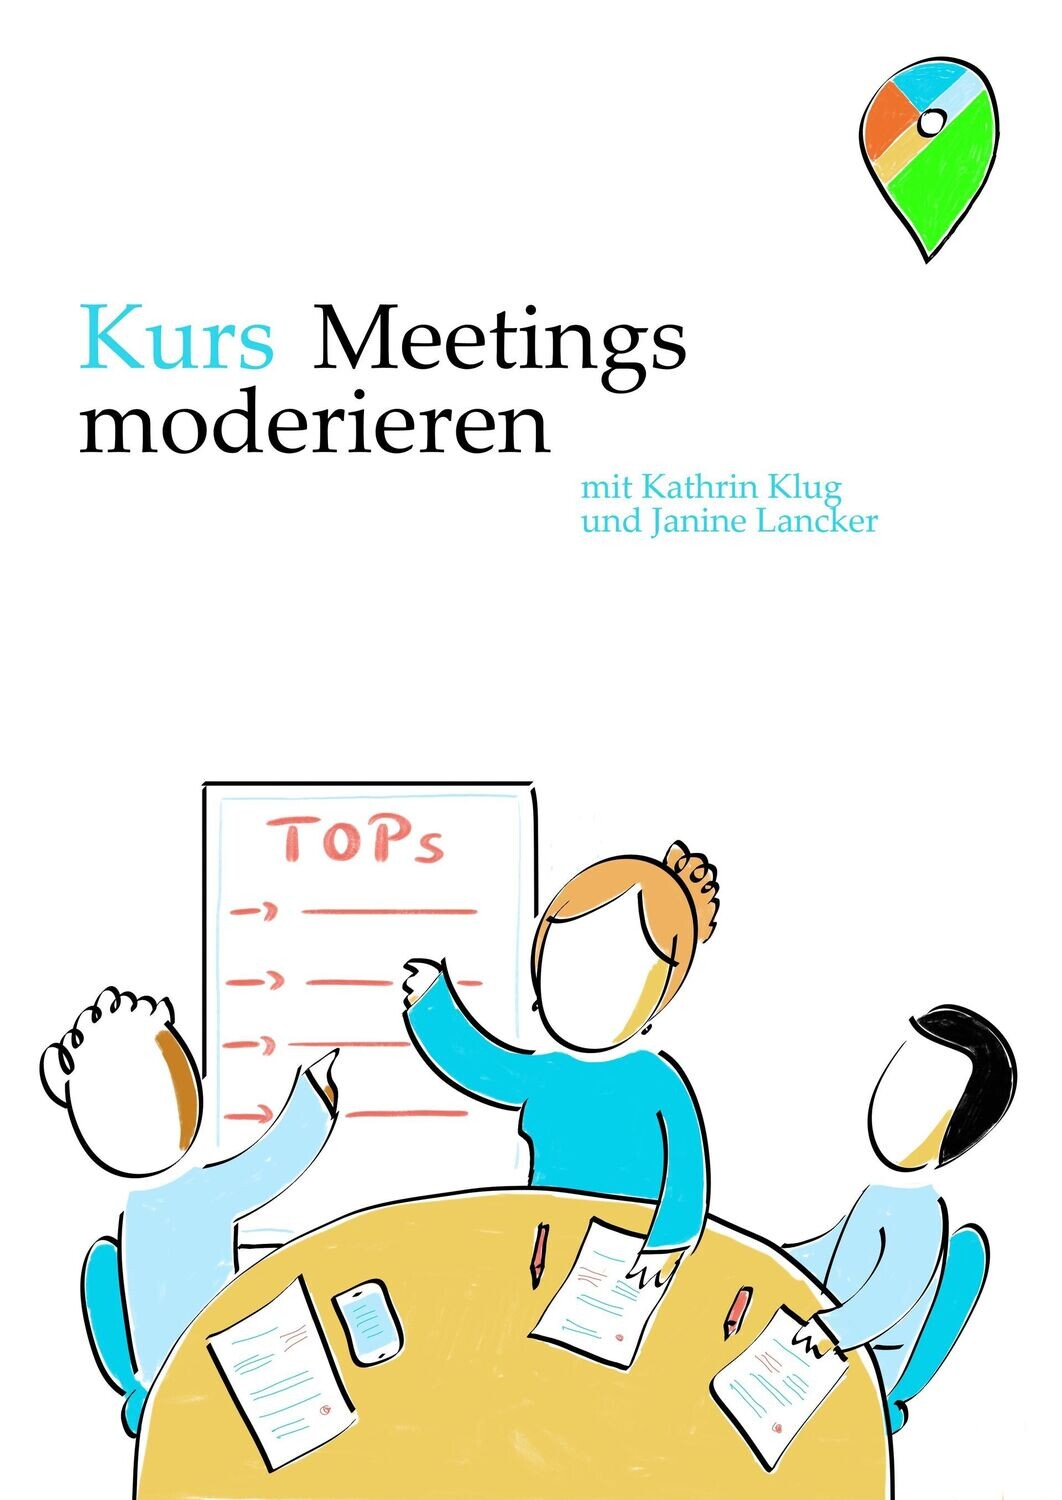 SchauSchau Akademie Kathrin Klug Kurs Moderation in Bremen